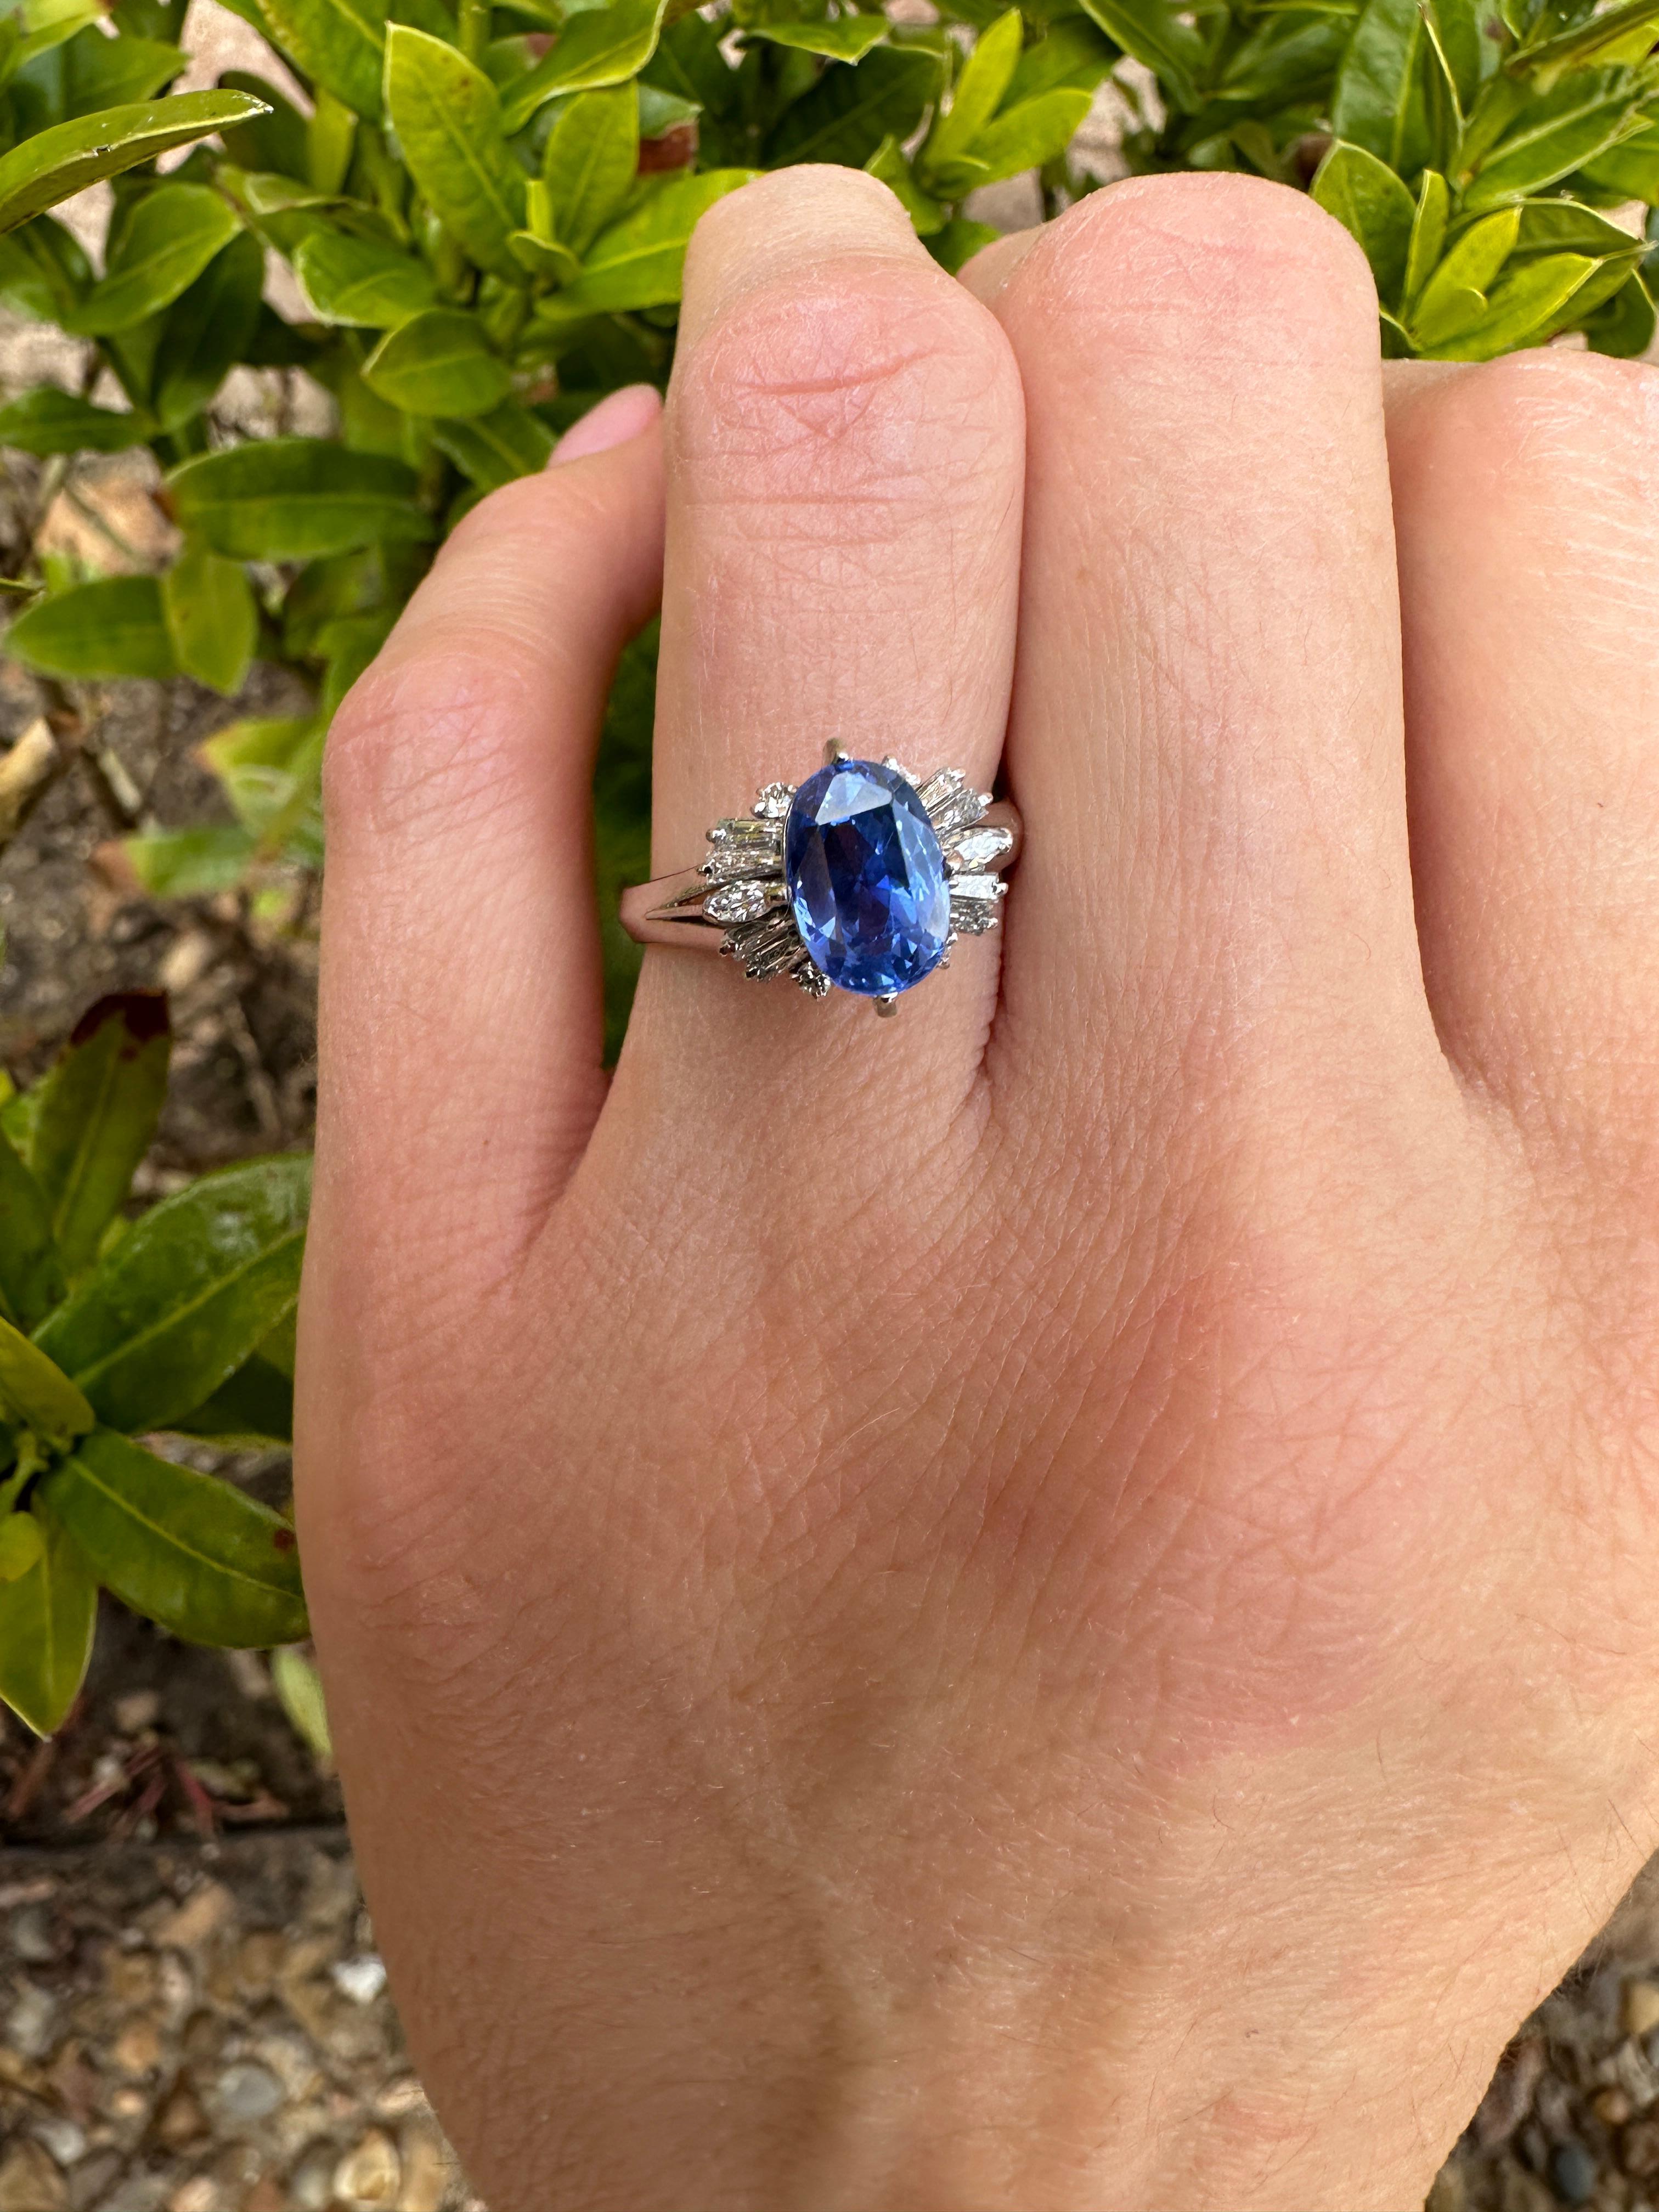 Diese Ceylon no heat Saphire werden von Tag zu Tag immer seltener.
Ein lebhafter blauer Saphir in ovaler Form mit seitlichen Diamanten auf einem Vintage-Ring aus Platin - mehr kann man für einen alternativen Verlobungsring oder einen Jahrestag nicht